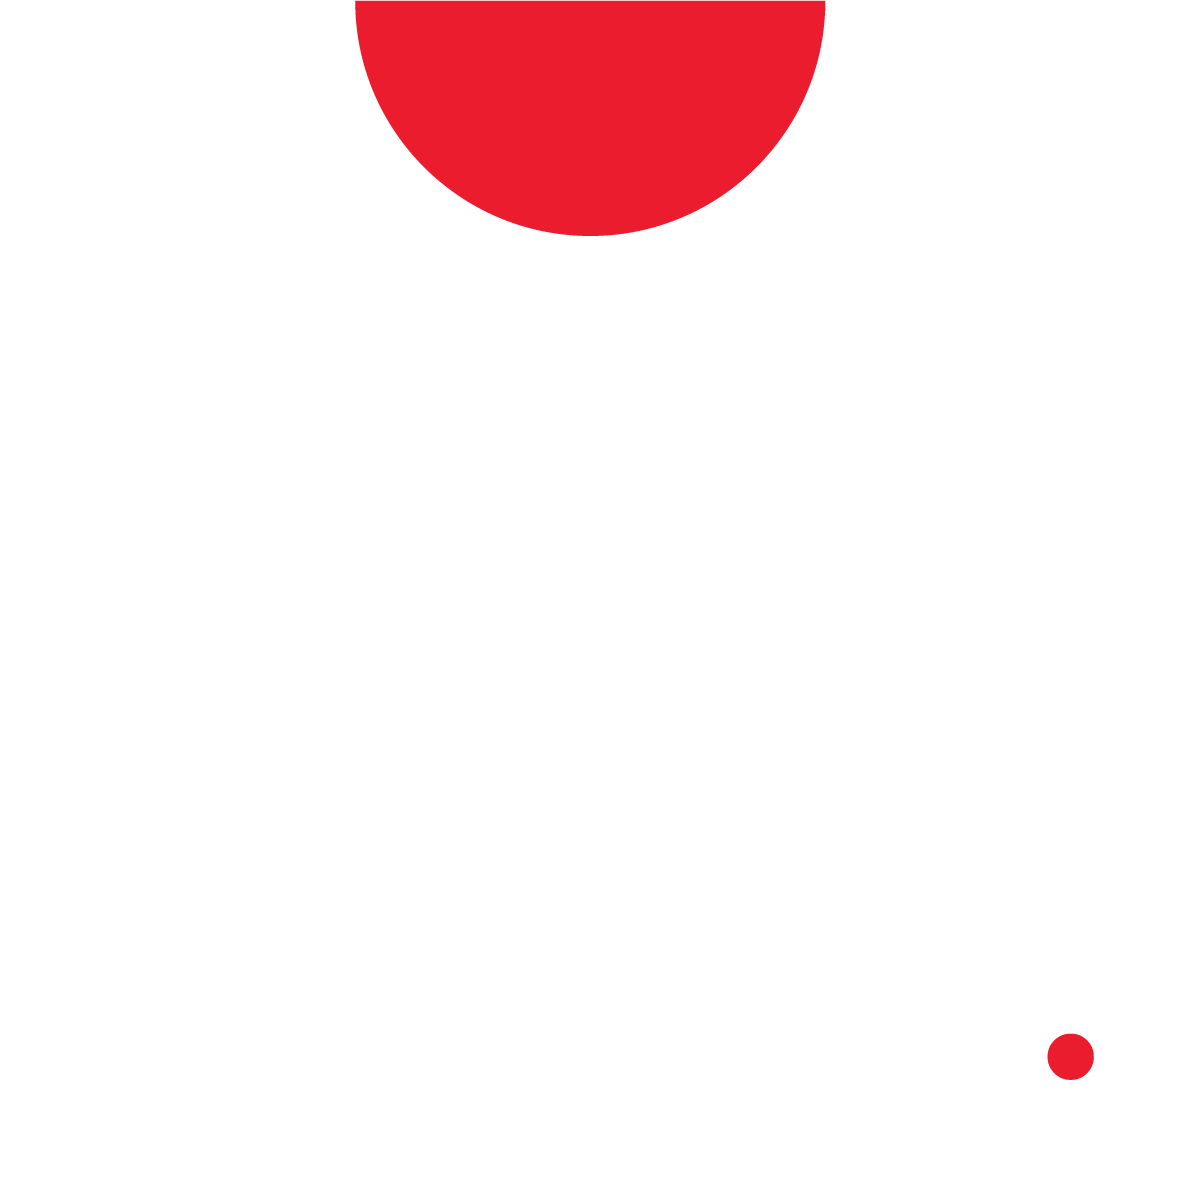 ArqCo